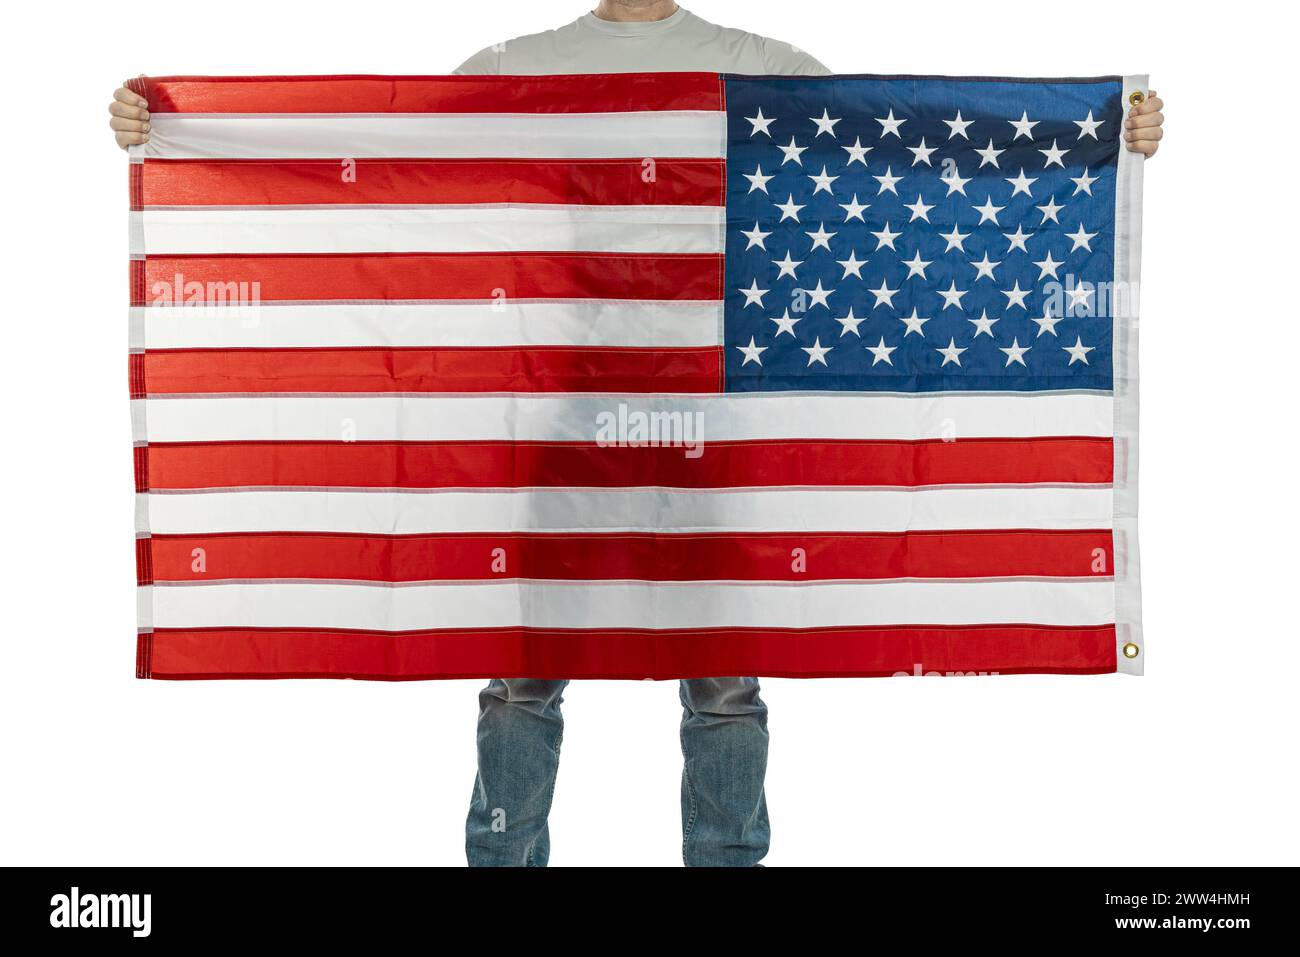 Individu anonyme affiche un grand drapeau des états-unis, symbolisant le patriotisme et la fierté nationale Banque D'Images